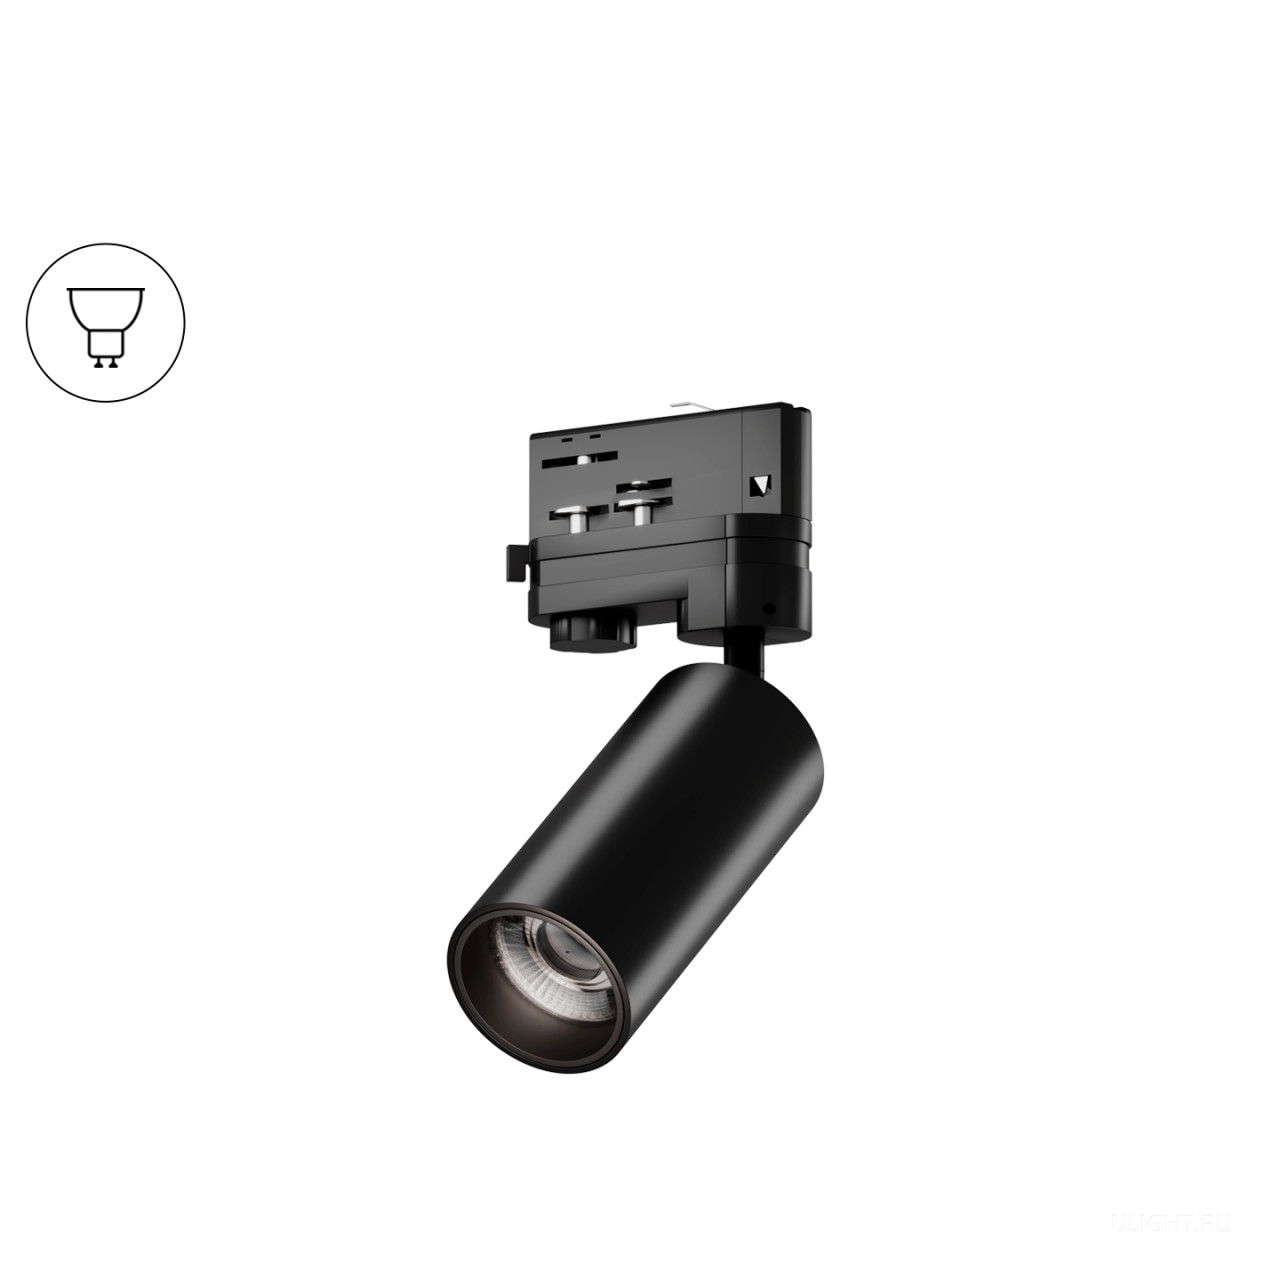 Цилиндрический корпус диаметром 55 мм для ламп с цоколем GU10.
Светильник идеально подойдет для подсветки прикроватной тумбочки или отдельных предметов интерьера.